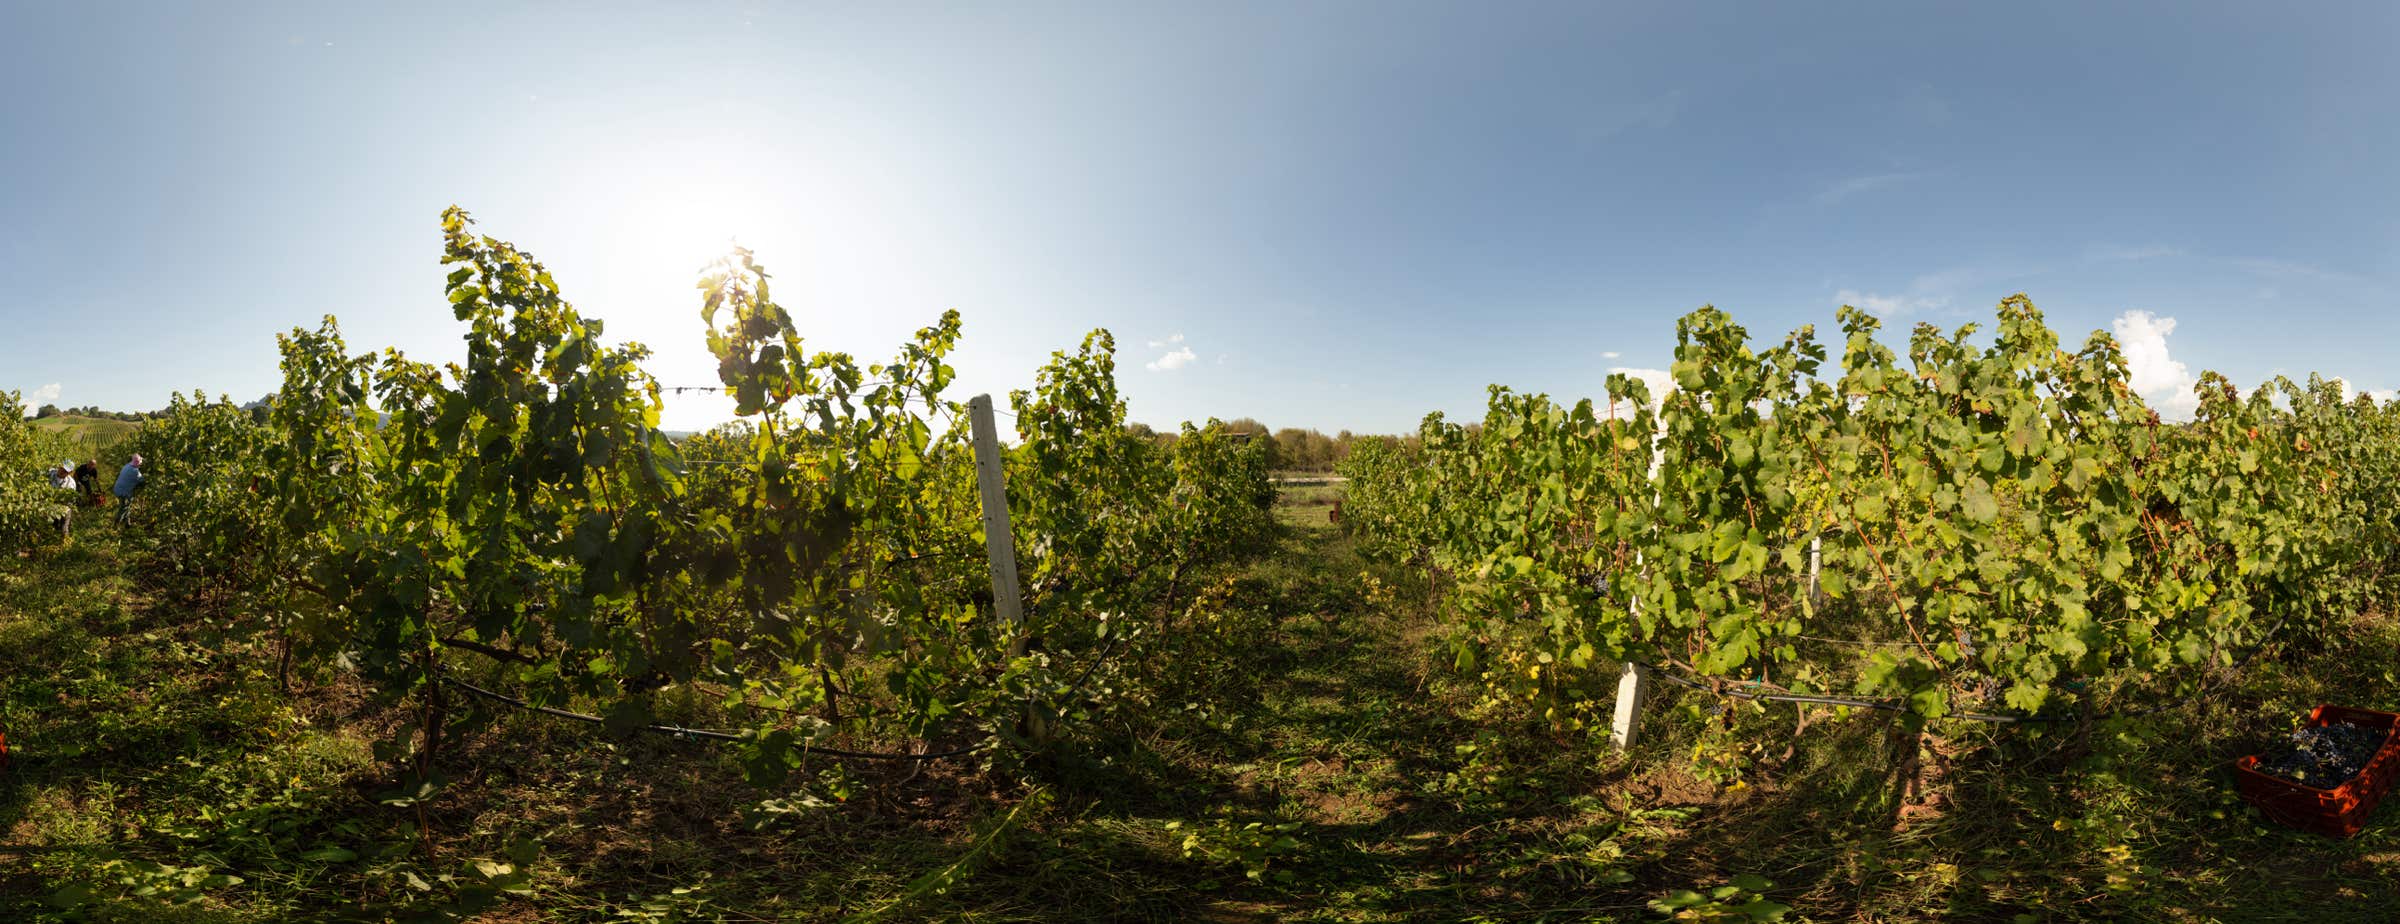 Das Bild zeigt eine 360°-Ansicht zwischen Weinstöcken in einem Weinberg. Arbeiter*innen sind dabei, Trauben zu ernten.